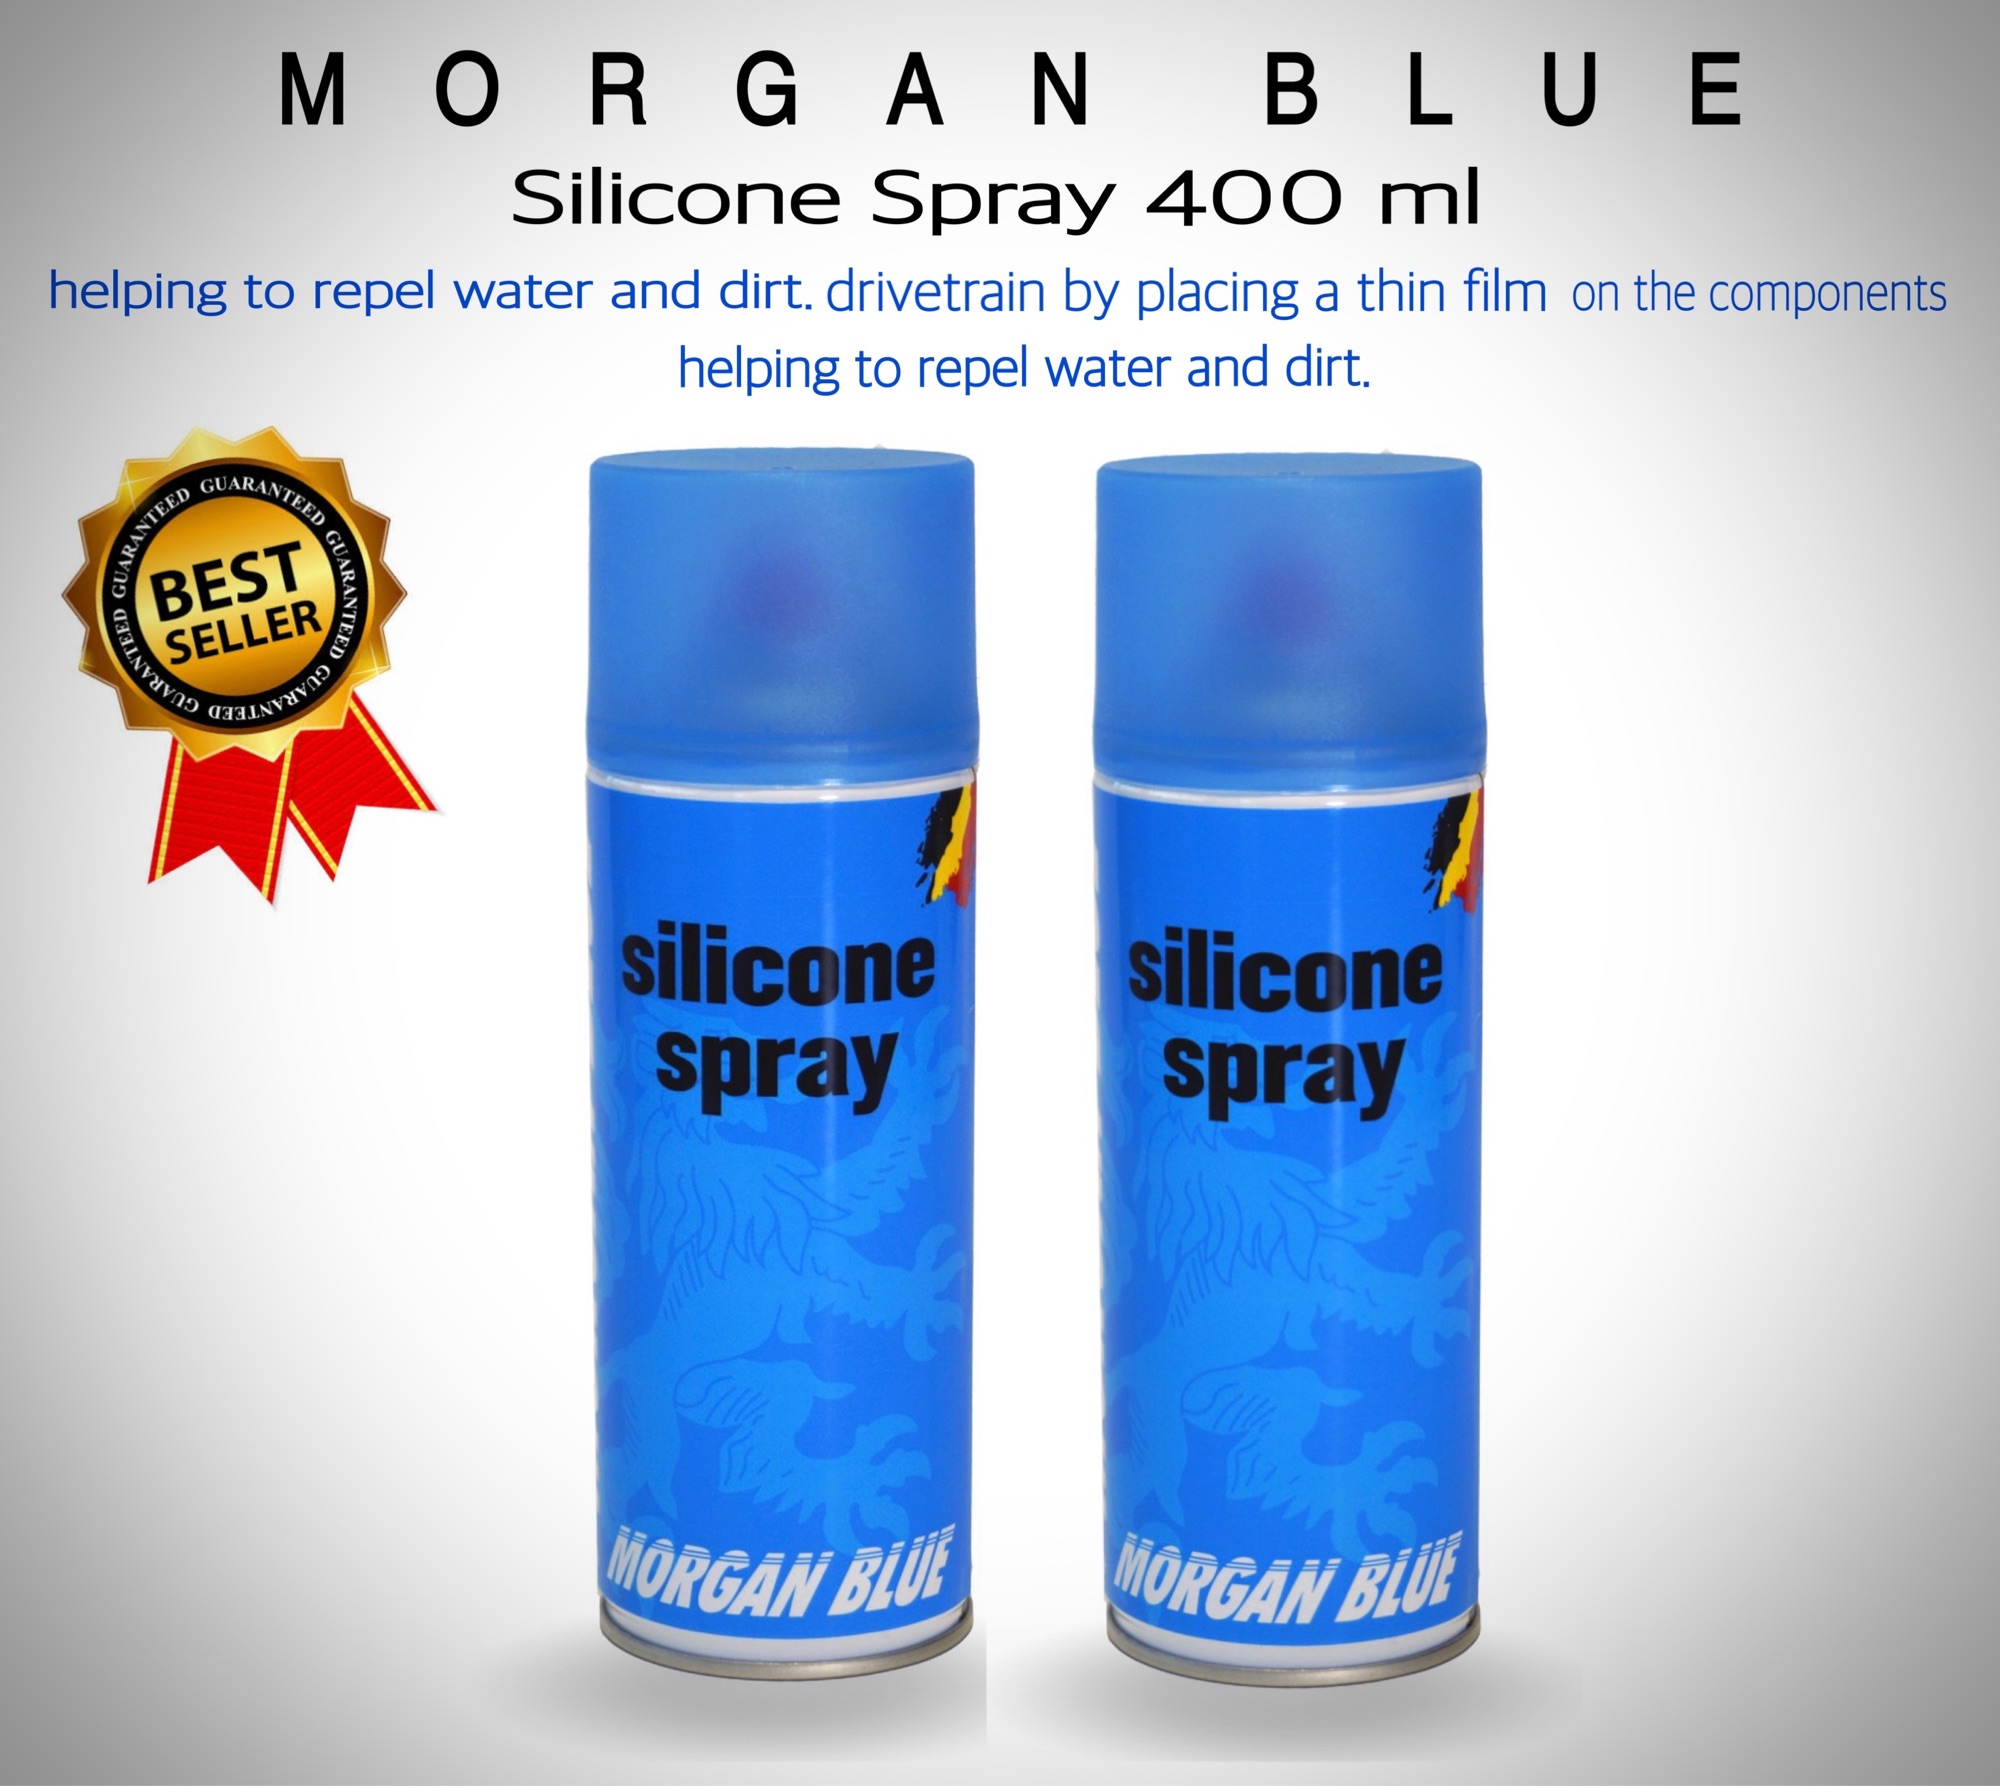 Buy Morgan Blue Silicone Spray - Morgan Blue